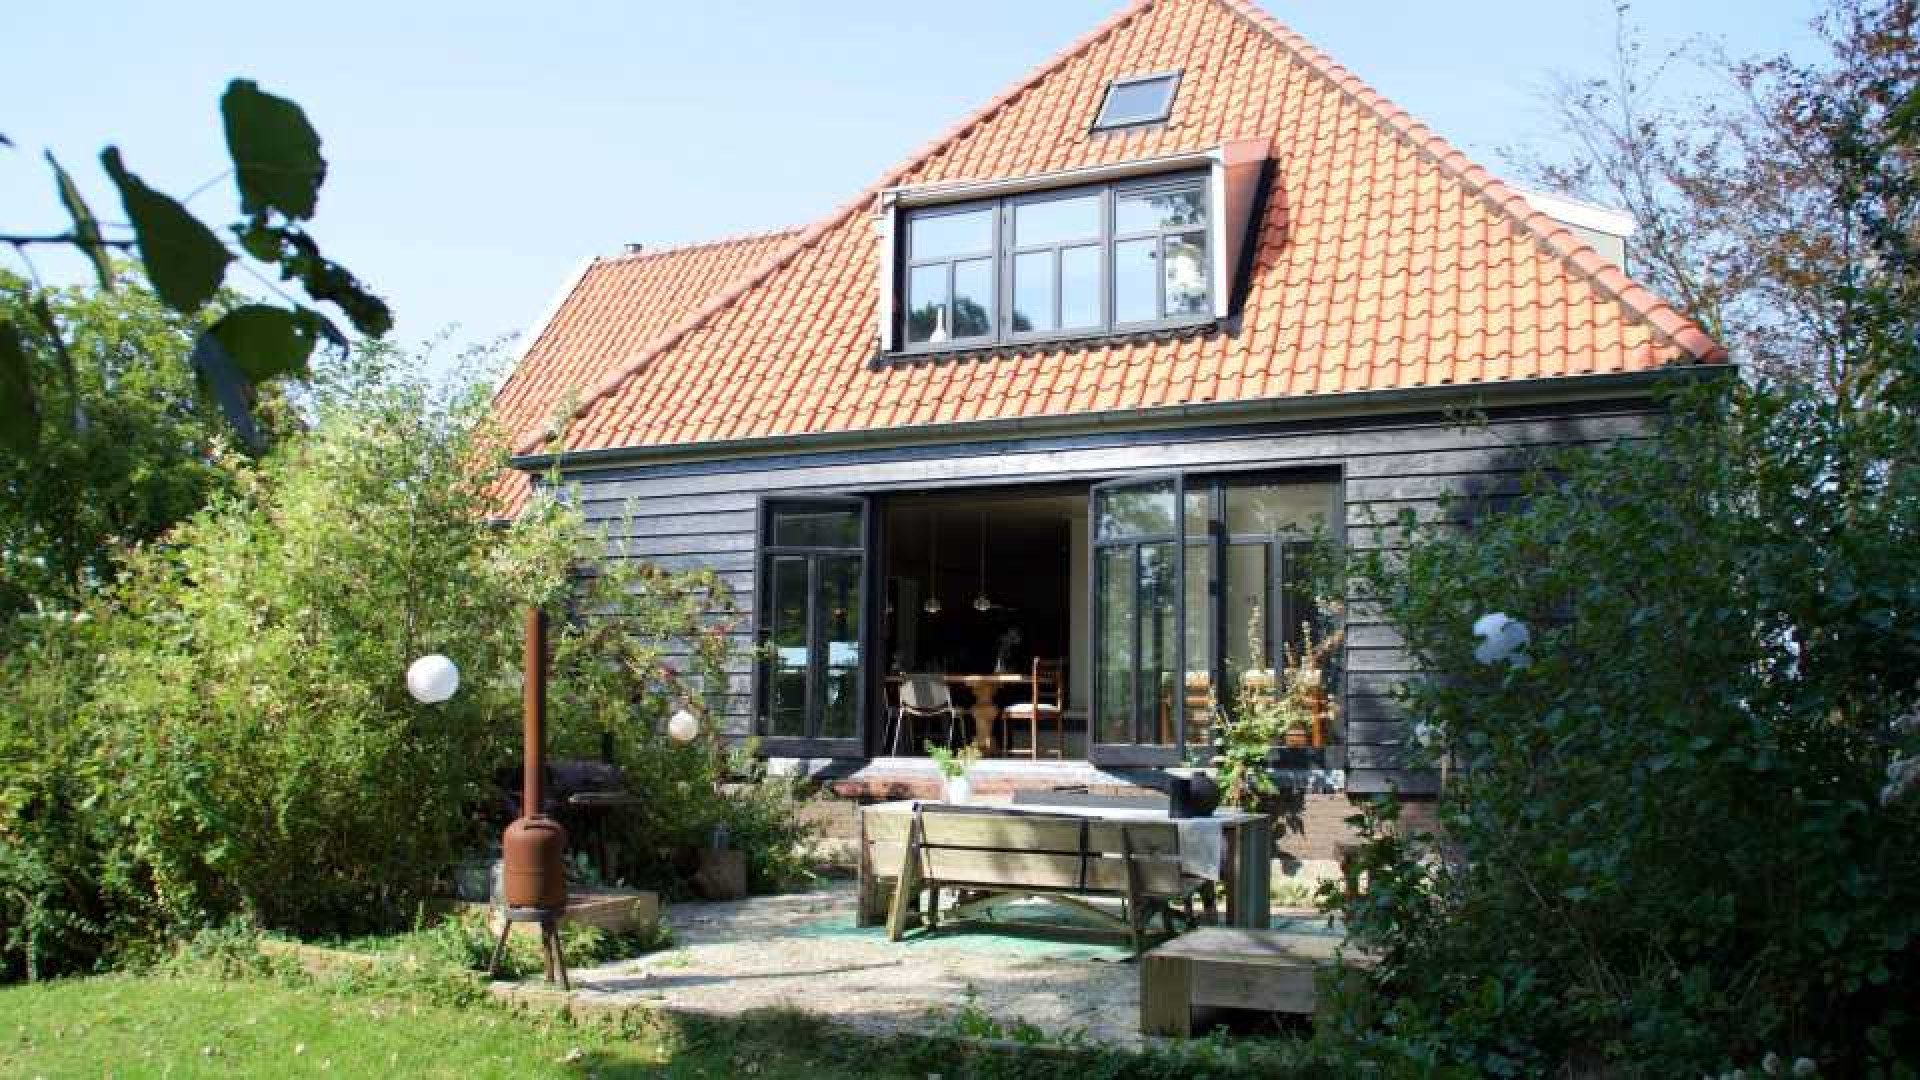 Cabaretier Jan Jaap van der Wal koopt prachtig landhuis. Zie foto's